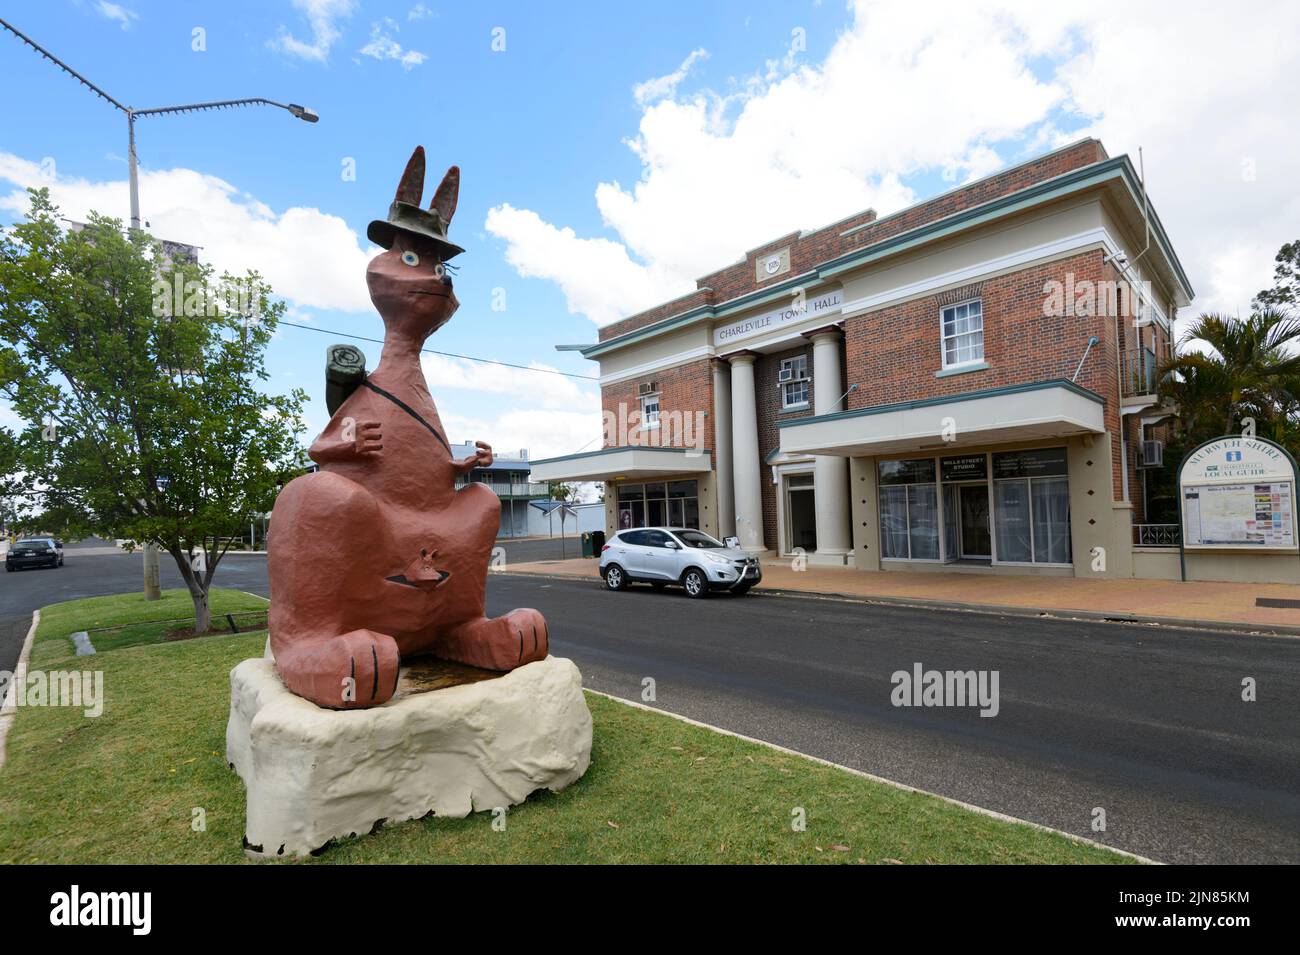 Matilda La escultura del Canguro frente al imponente Ayuntamiento en Wills Street, Charleville, South West Queensland, Queensland, Australia Foto de stock